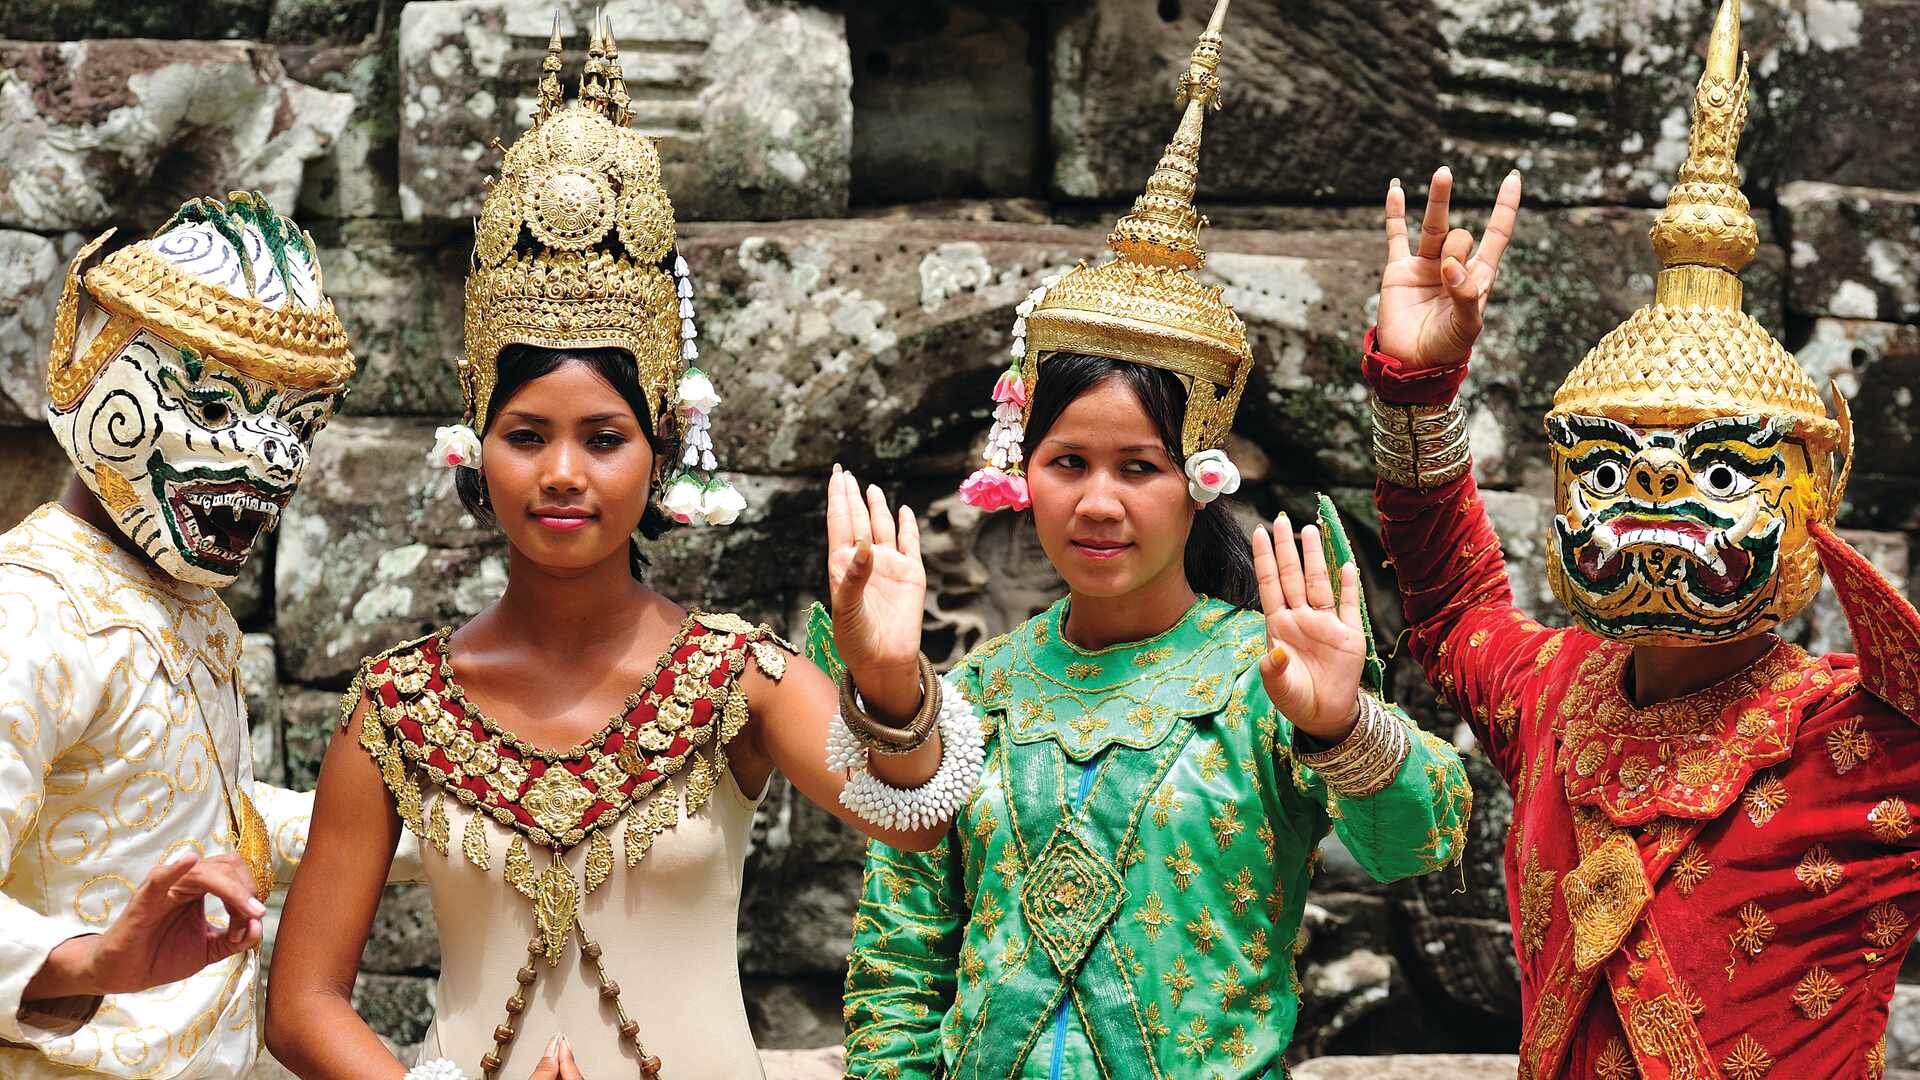 View of Apsara Dancers, Cambodia